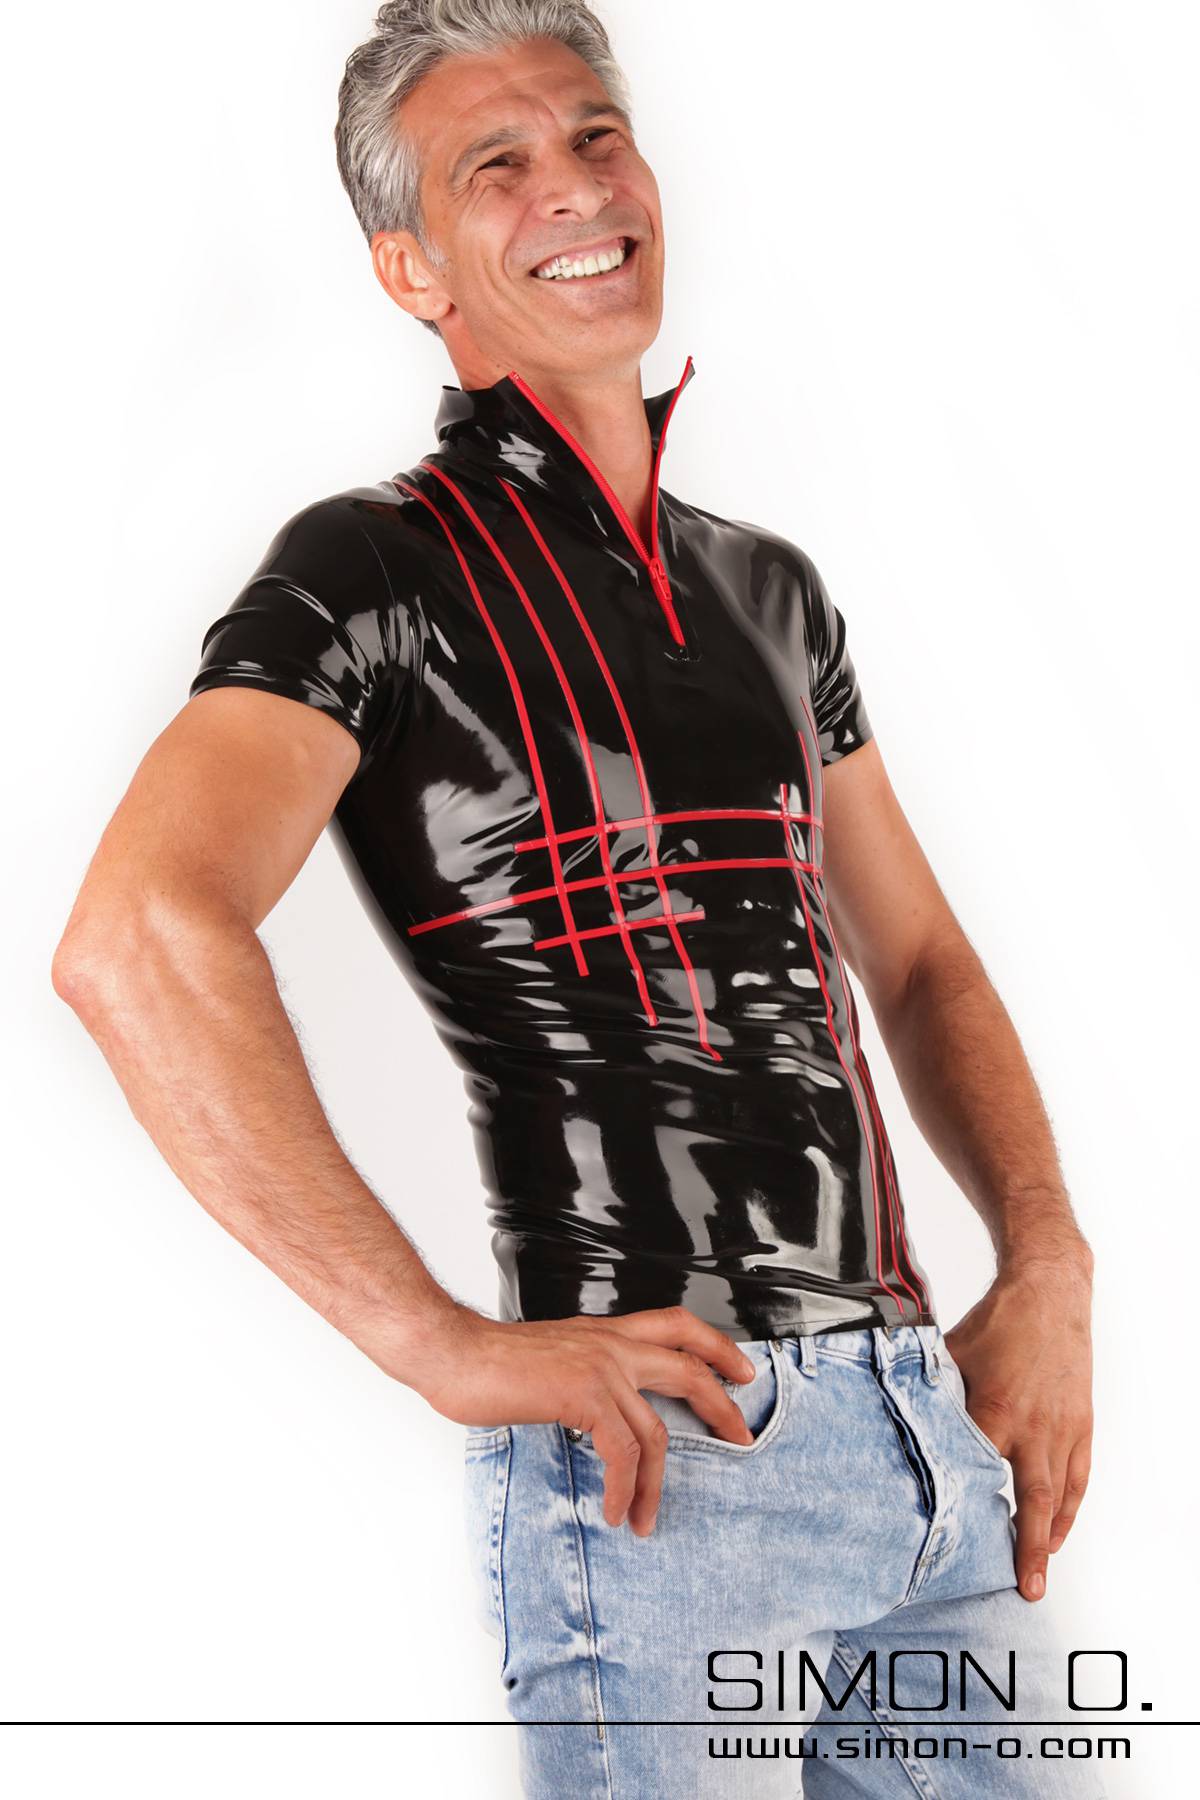 Ein Mann trägt ein schwarzes Latex Shirt Latex Shirt mit Zipp vorne und rotem Streifen Design